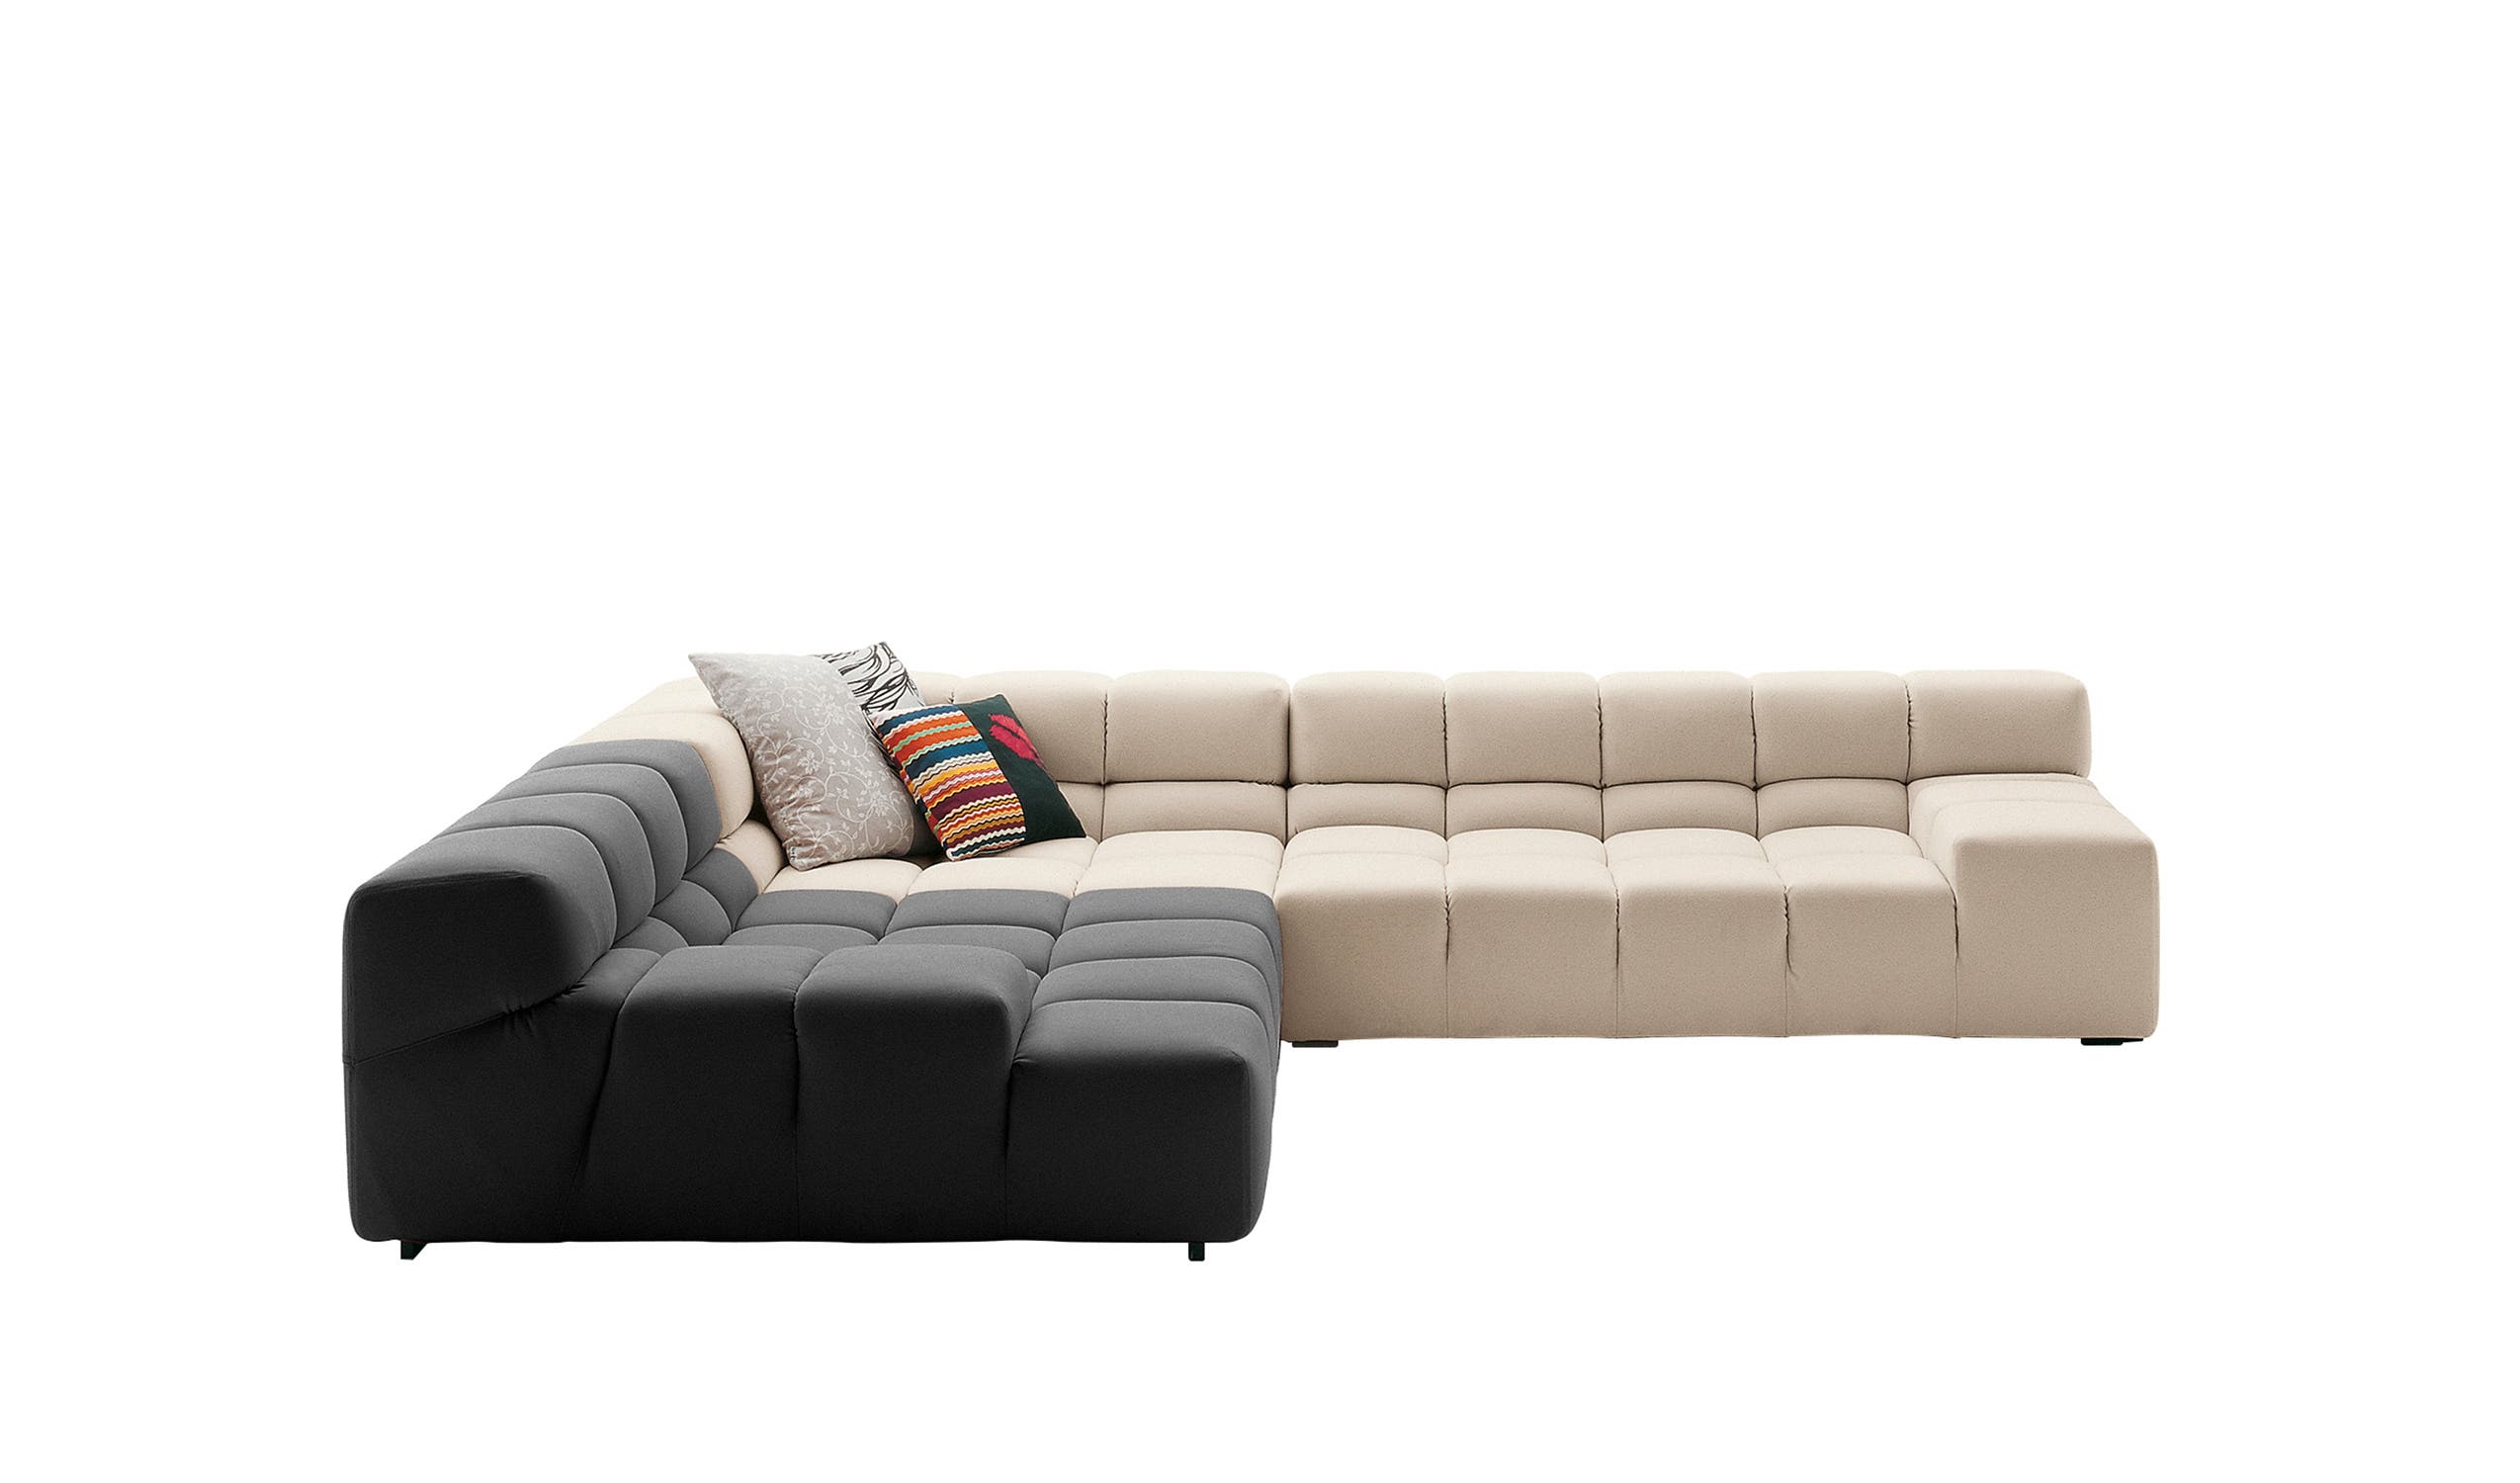 Modern designer italian sofas - Tufty-Time Sofas 1